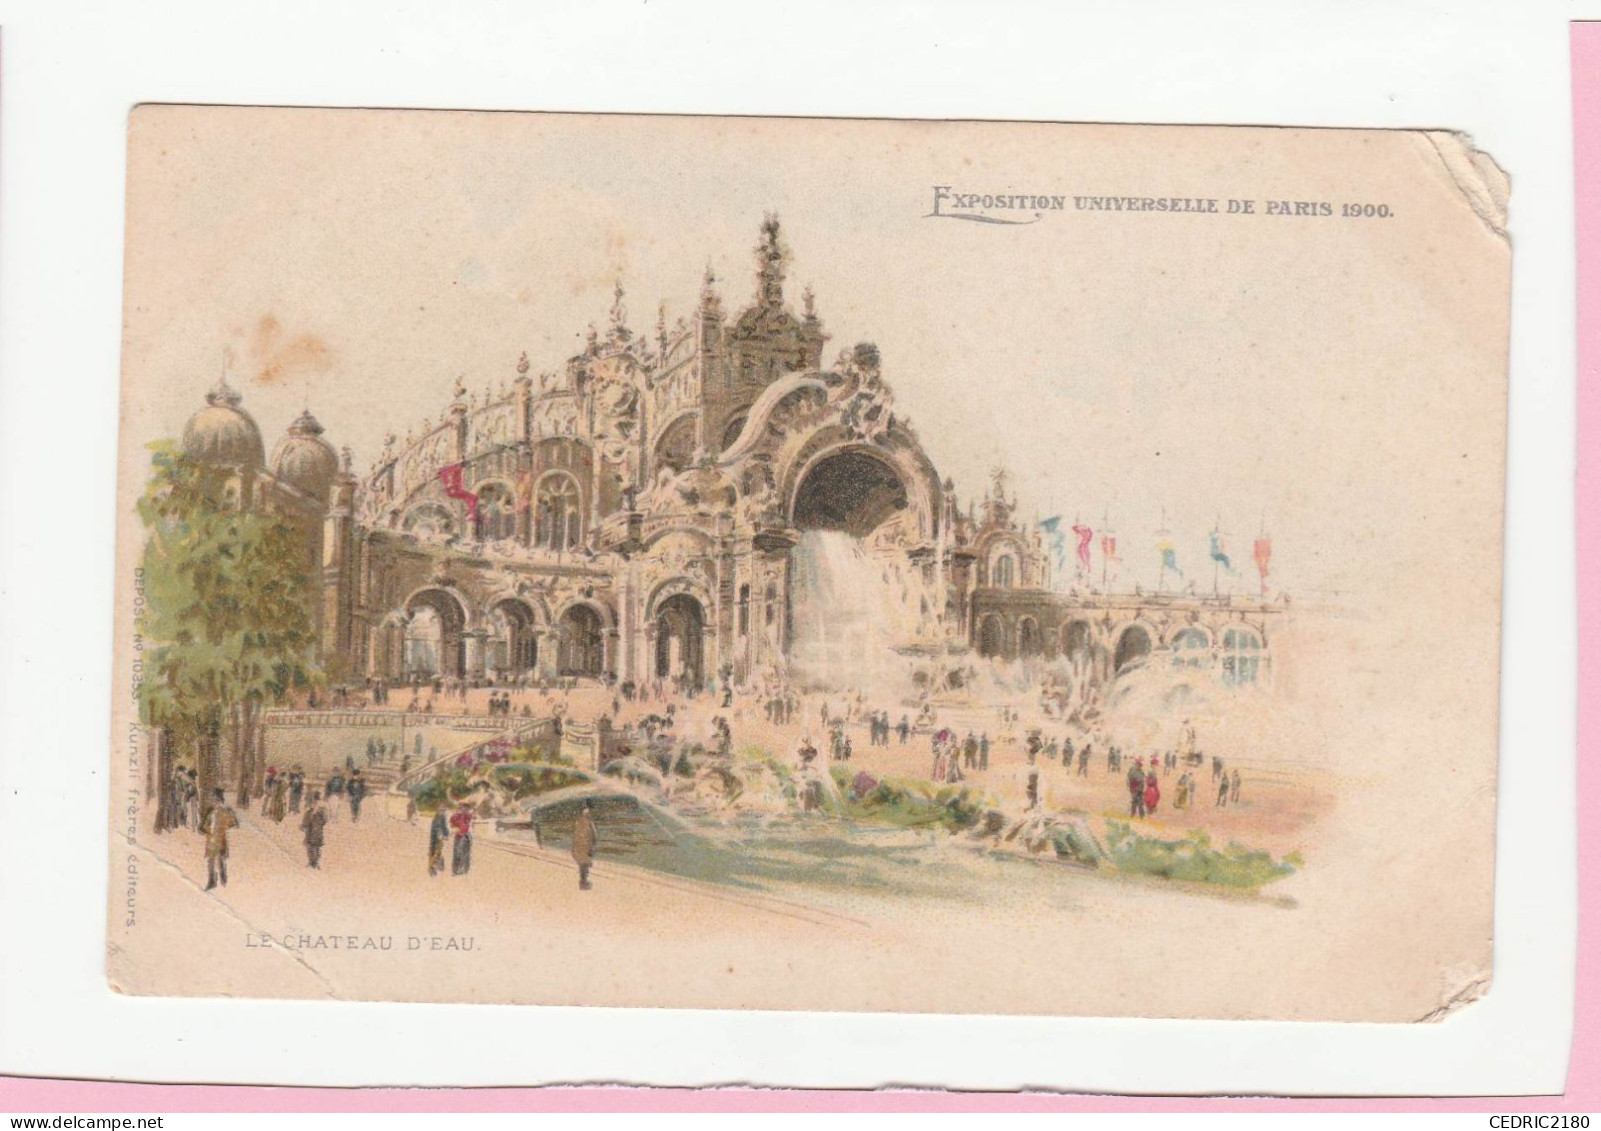 EXPOSITION UNIVERSELLE DE PARIS 1900 LE CHATEAU D'EAU - Exhibitions